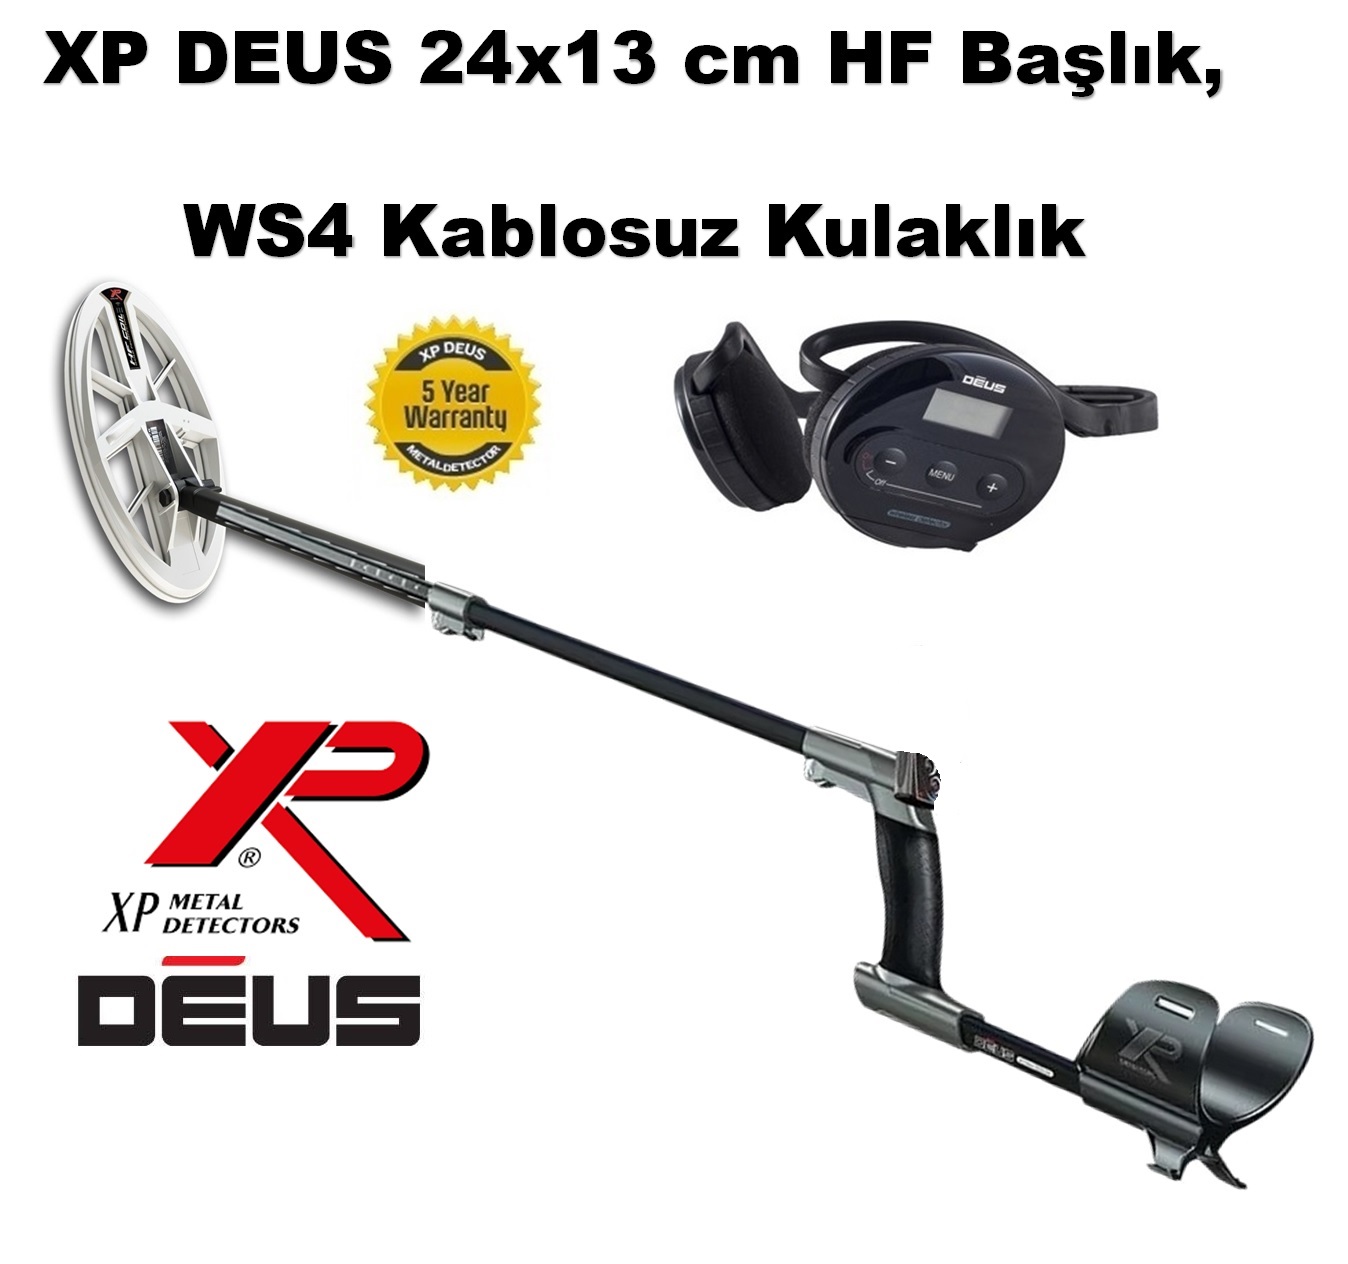 XP DEUS - 24x13cm HF Başlık, WS4 Kulaklık